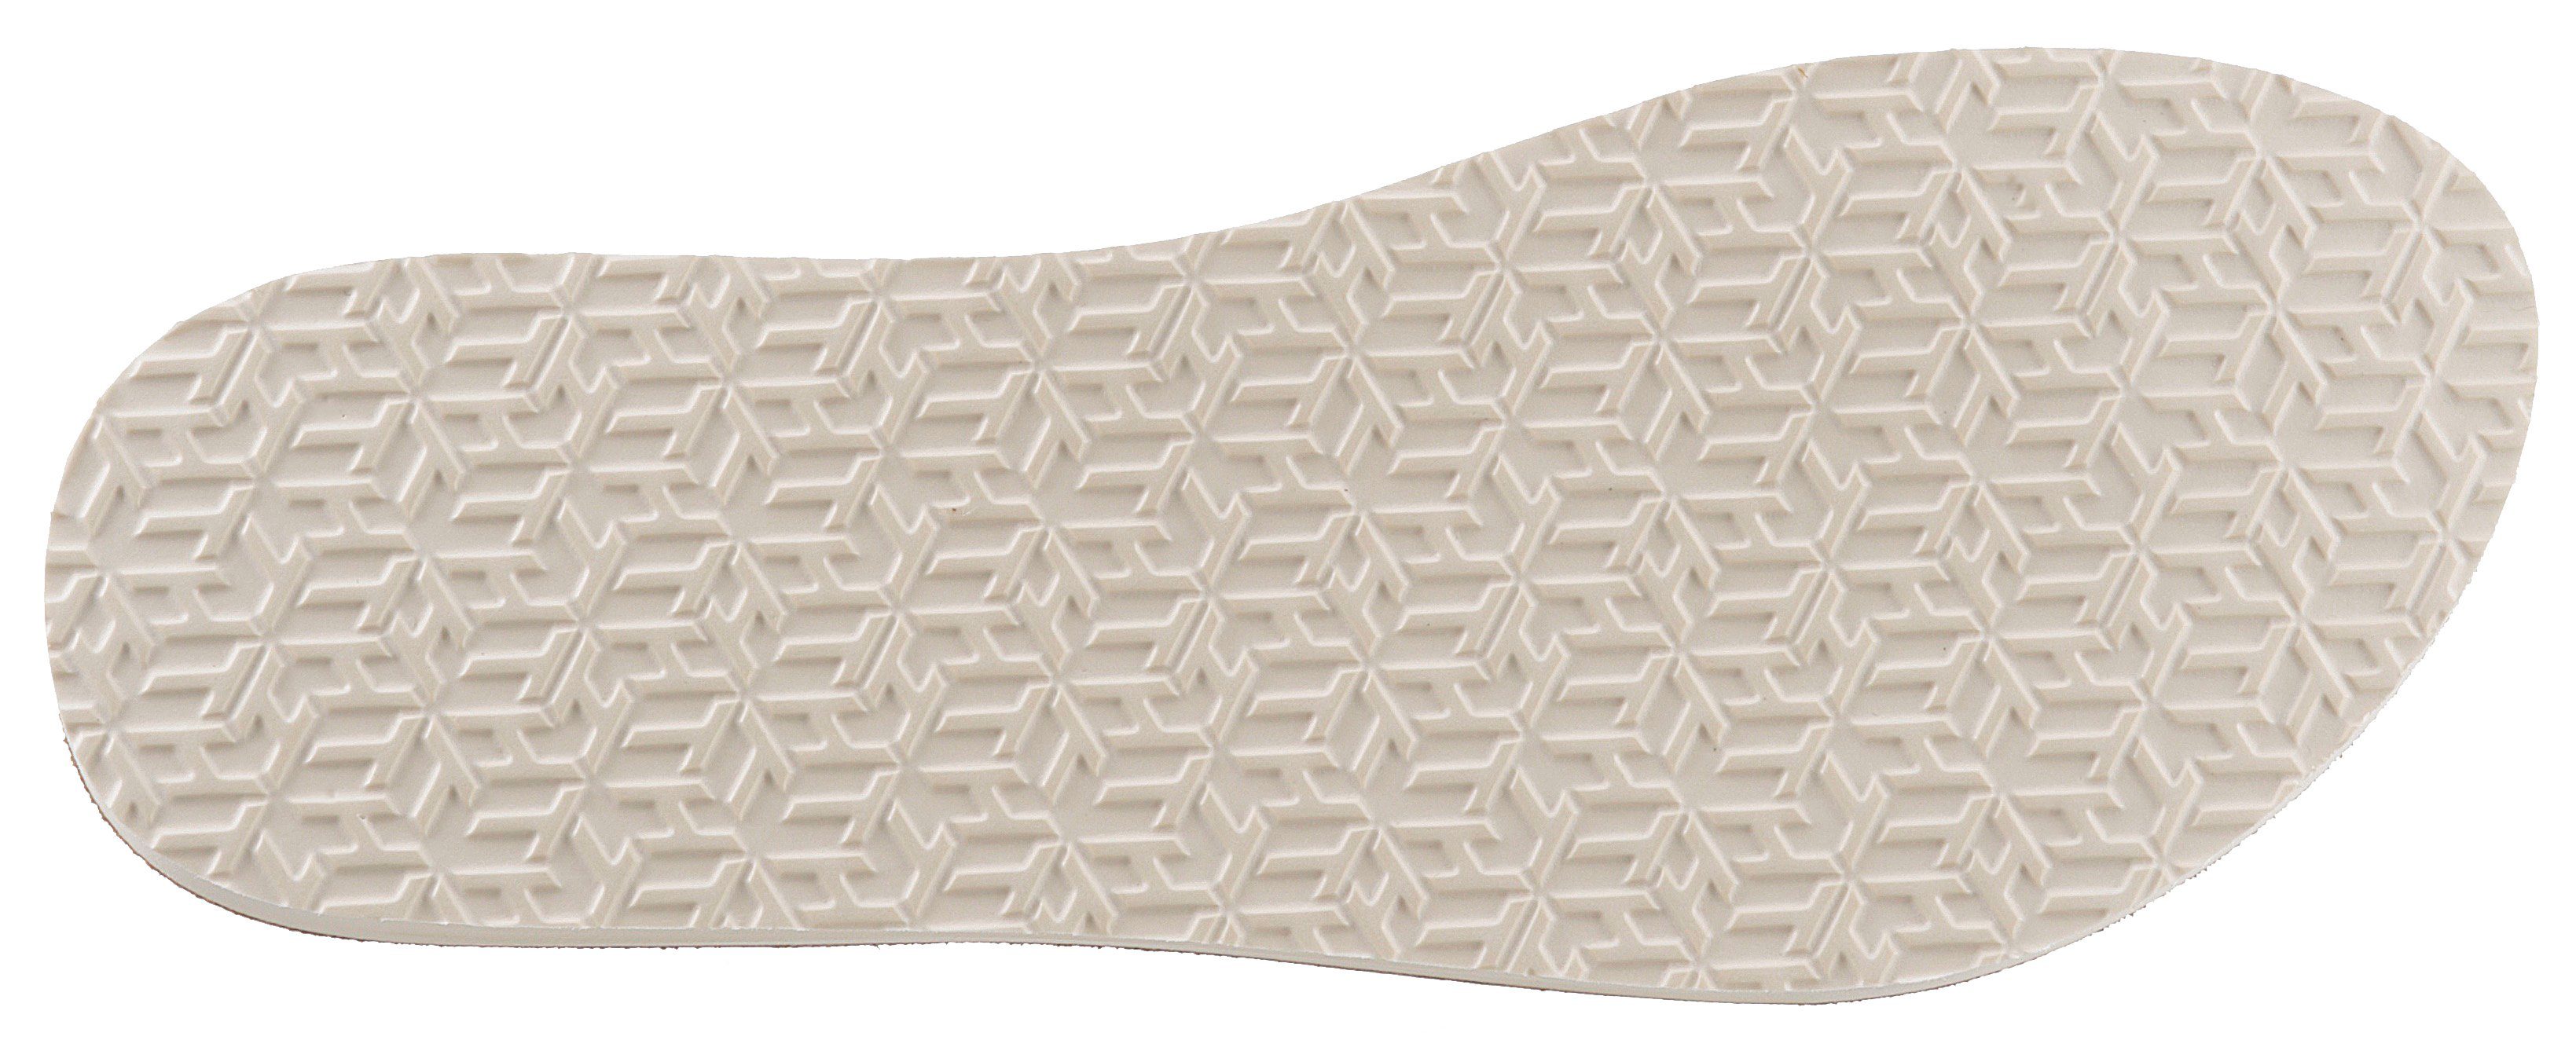 Hilfiger PRINT Bandagen ELEVATED bedruckten weiß-beige TH Zehentrenner SANDAL Tommy BEACH mit